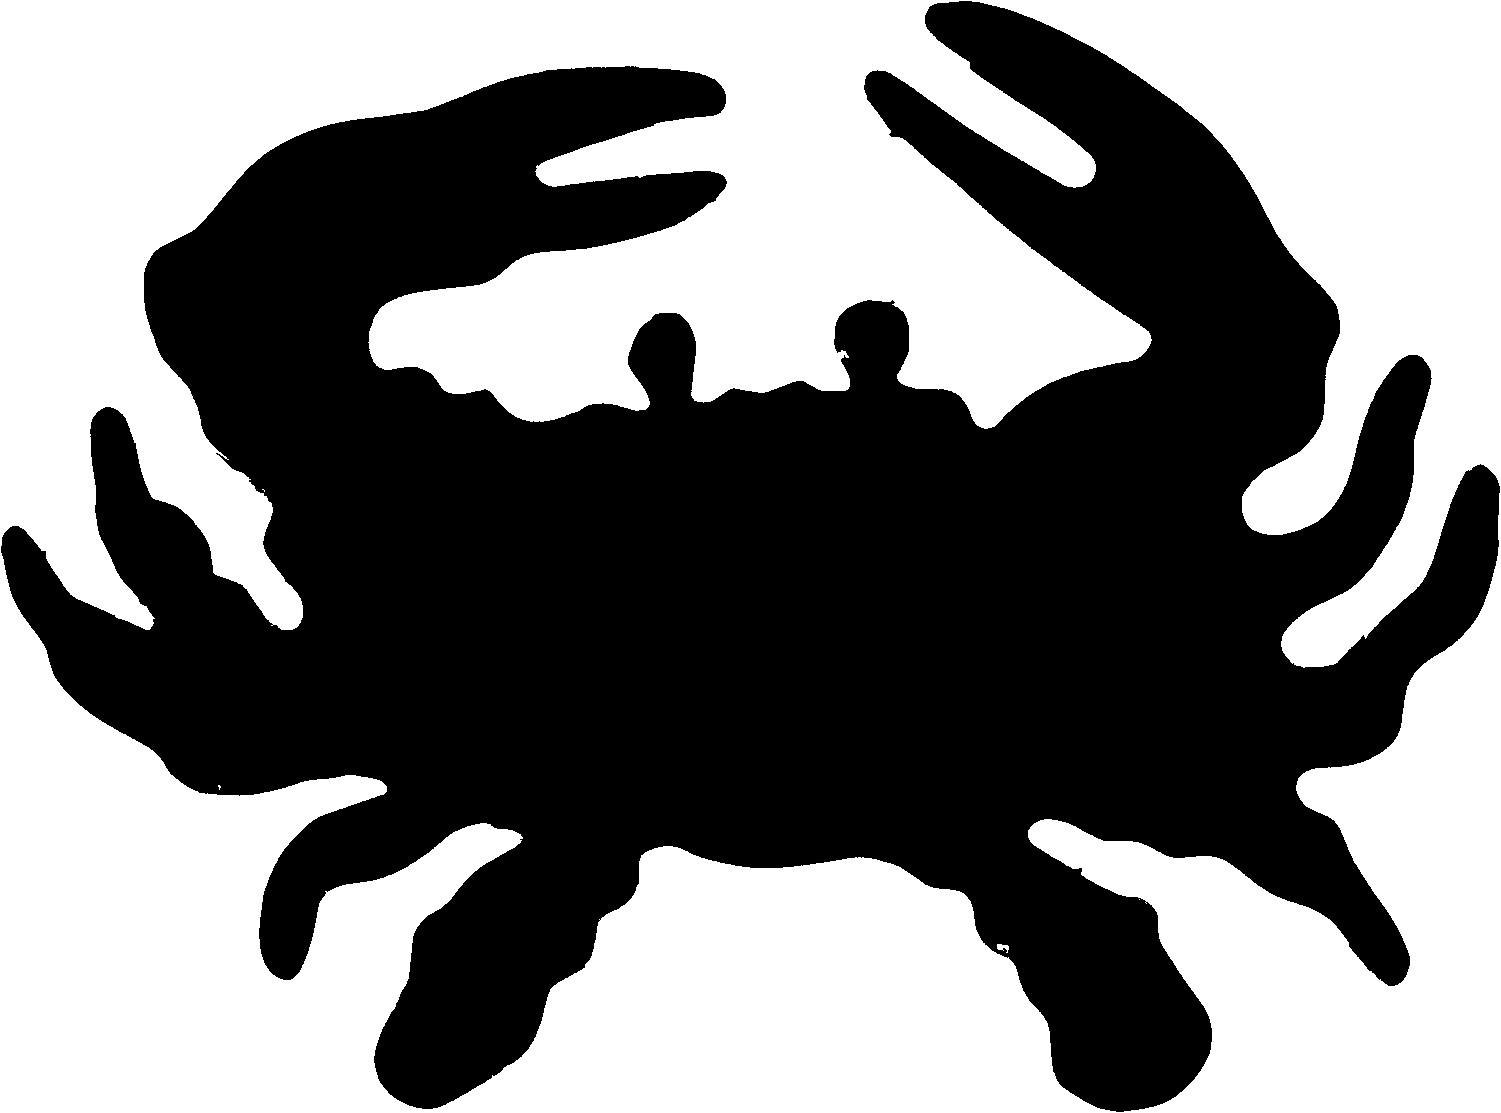 Crab turtle silhouette clip art selopamioro